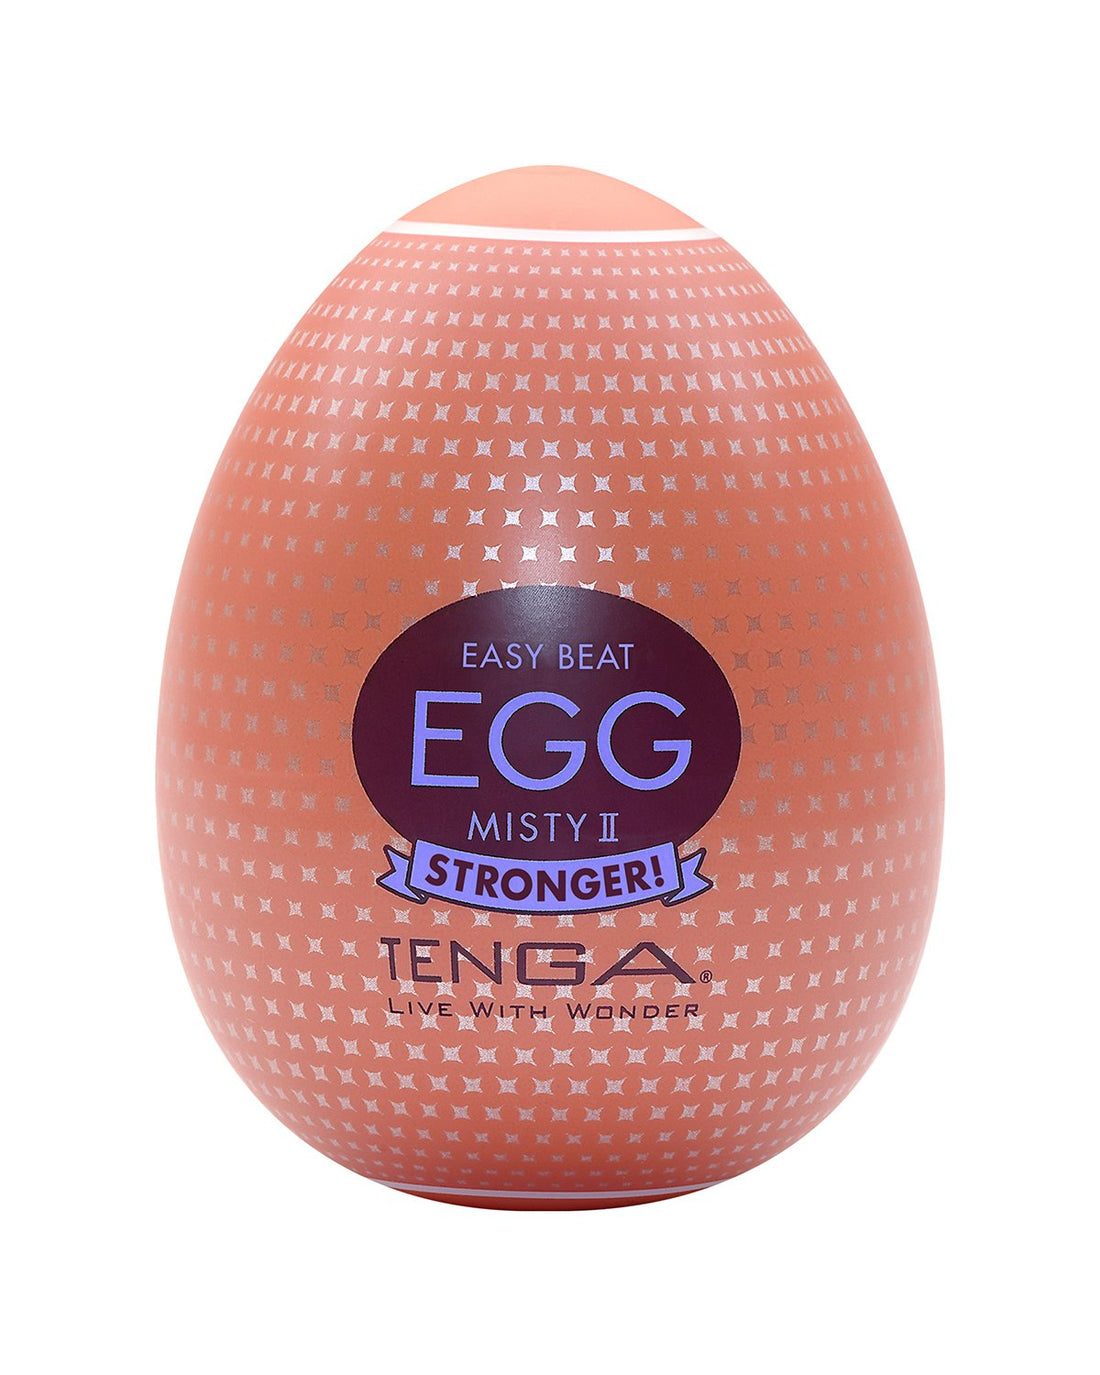 Tenga Egg Misty II japoński masturbator w kształcie jajka